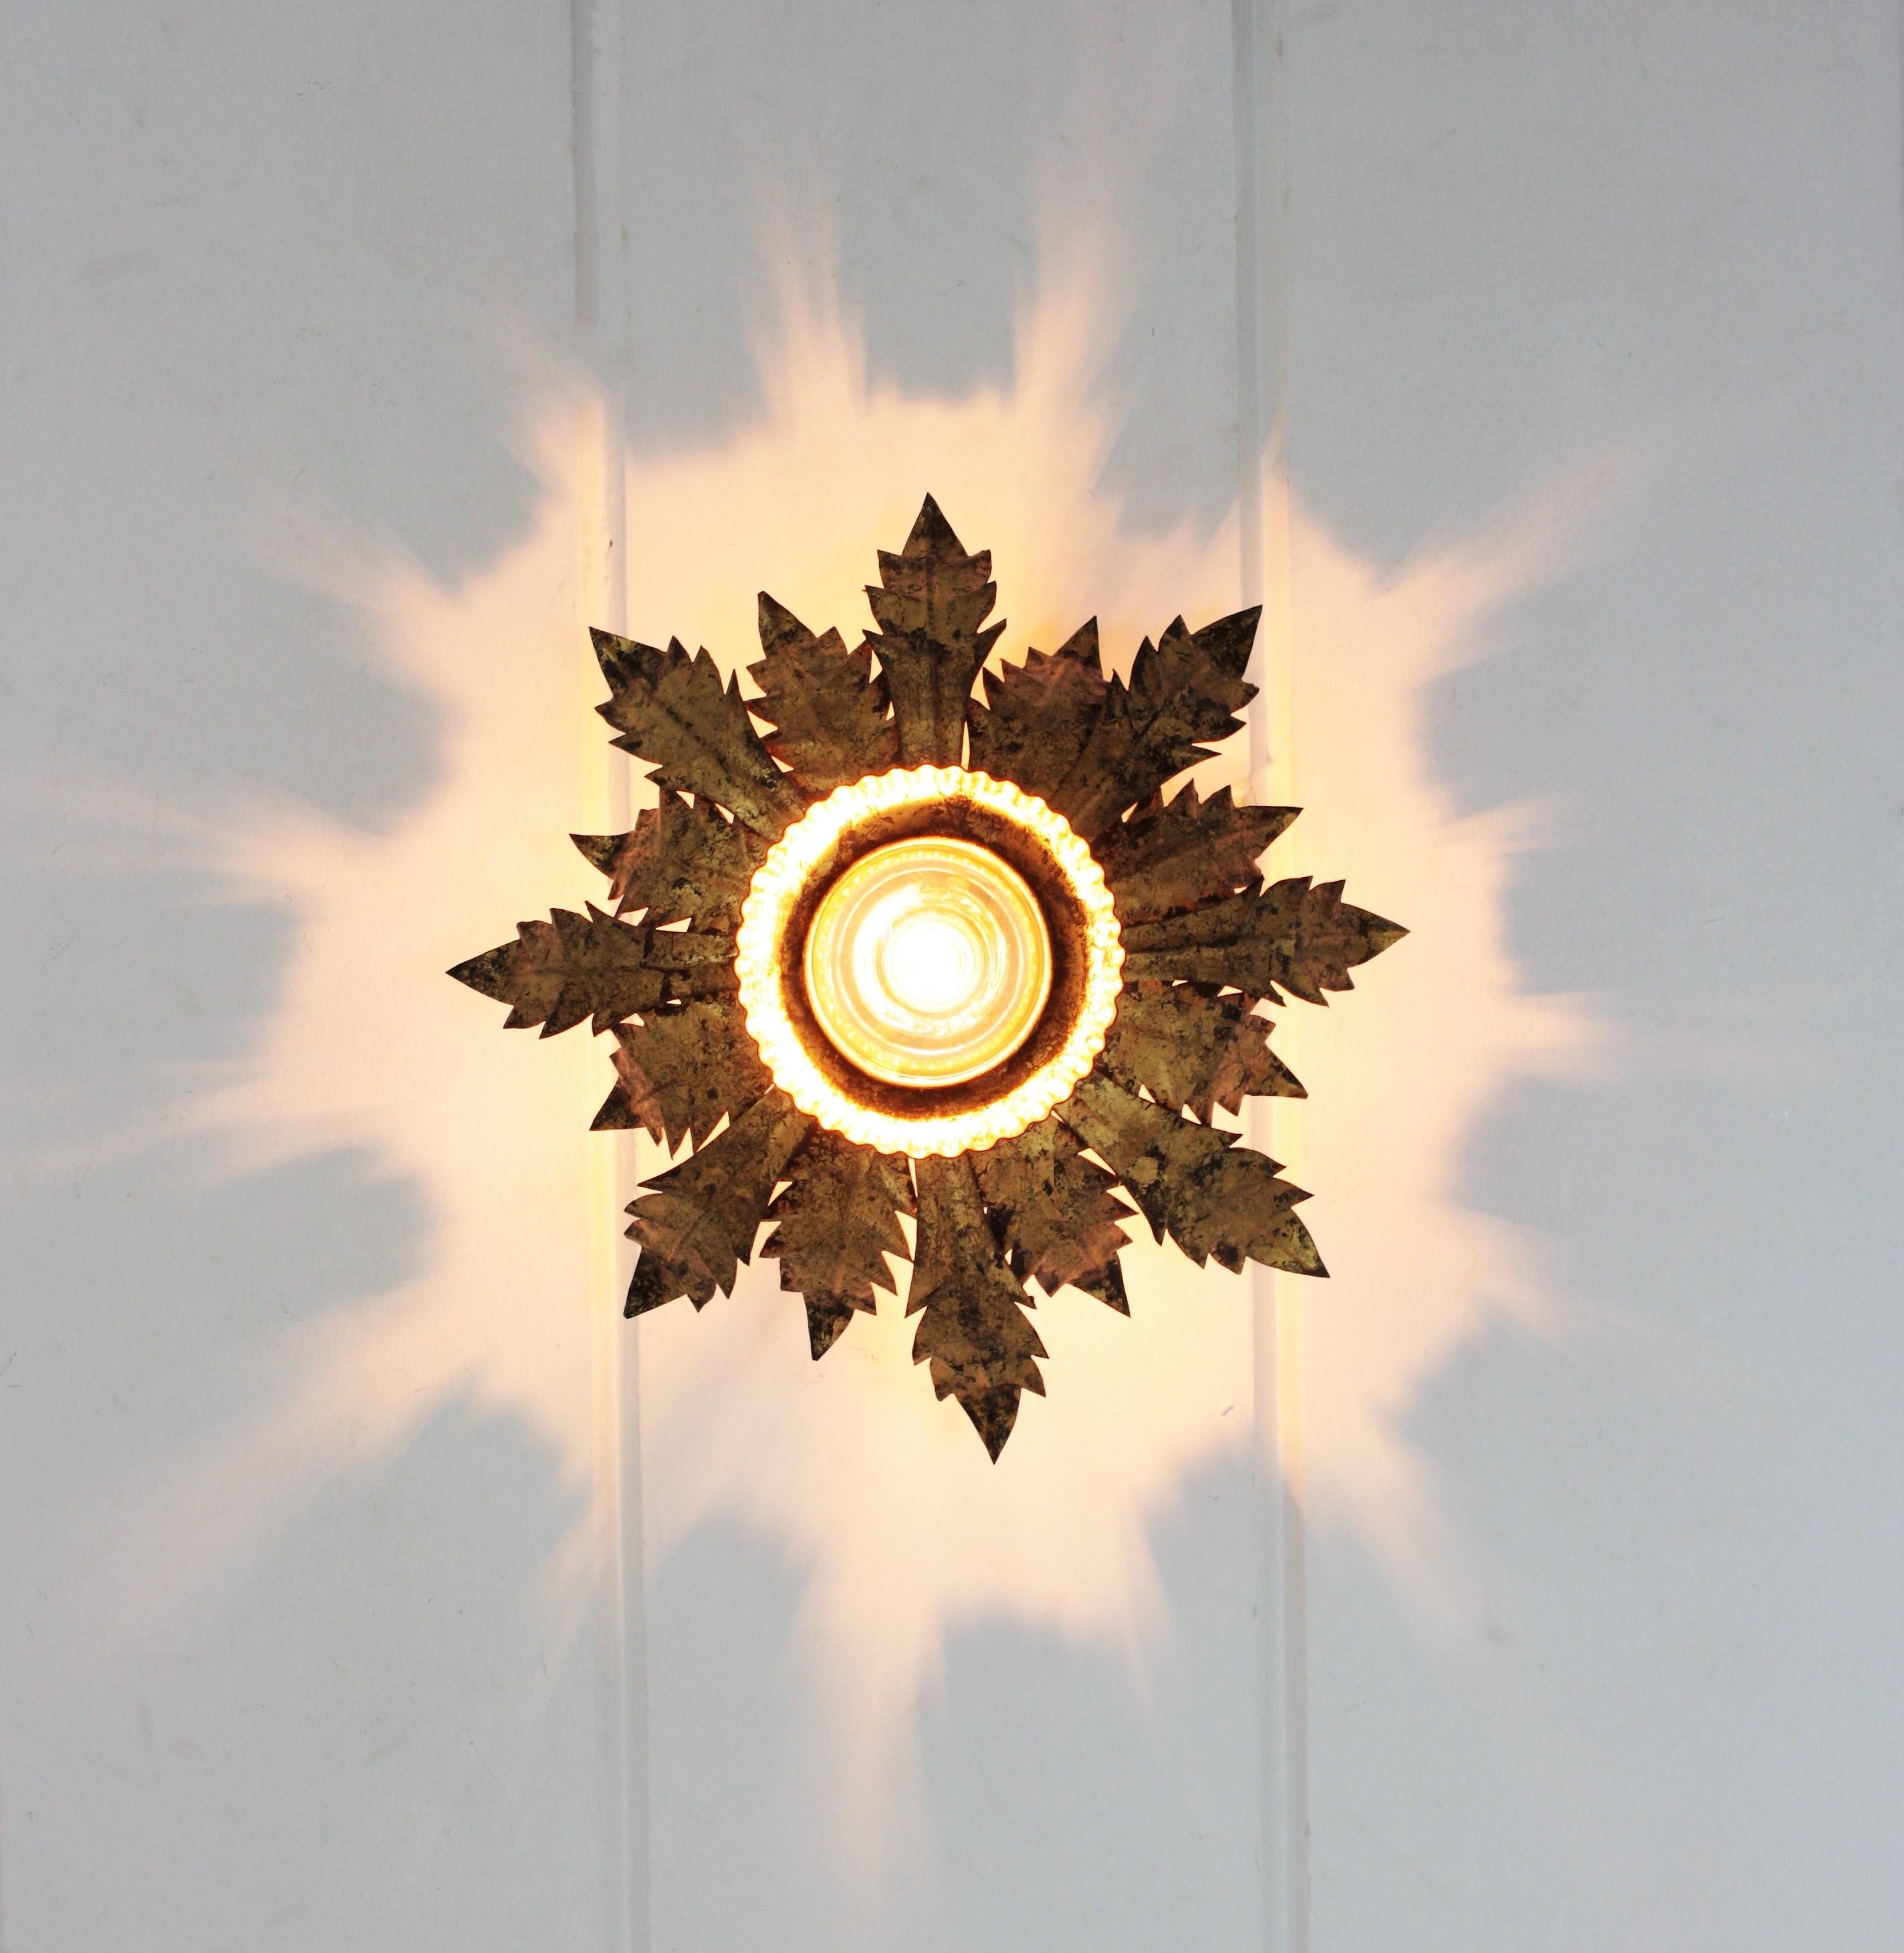 Leafed Crown Sunburst Light Fixture in Gold Gilt Metal For Sale 6